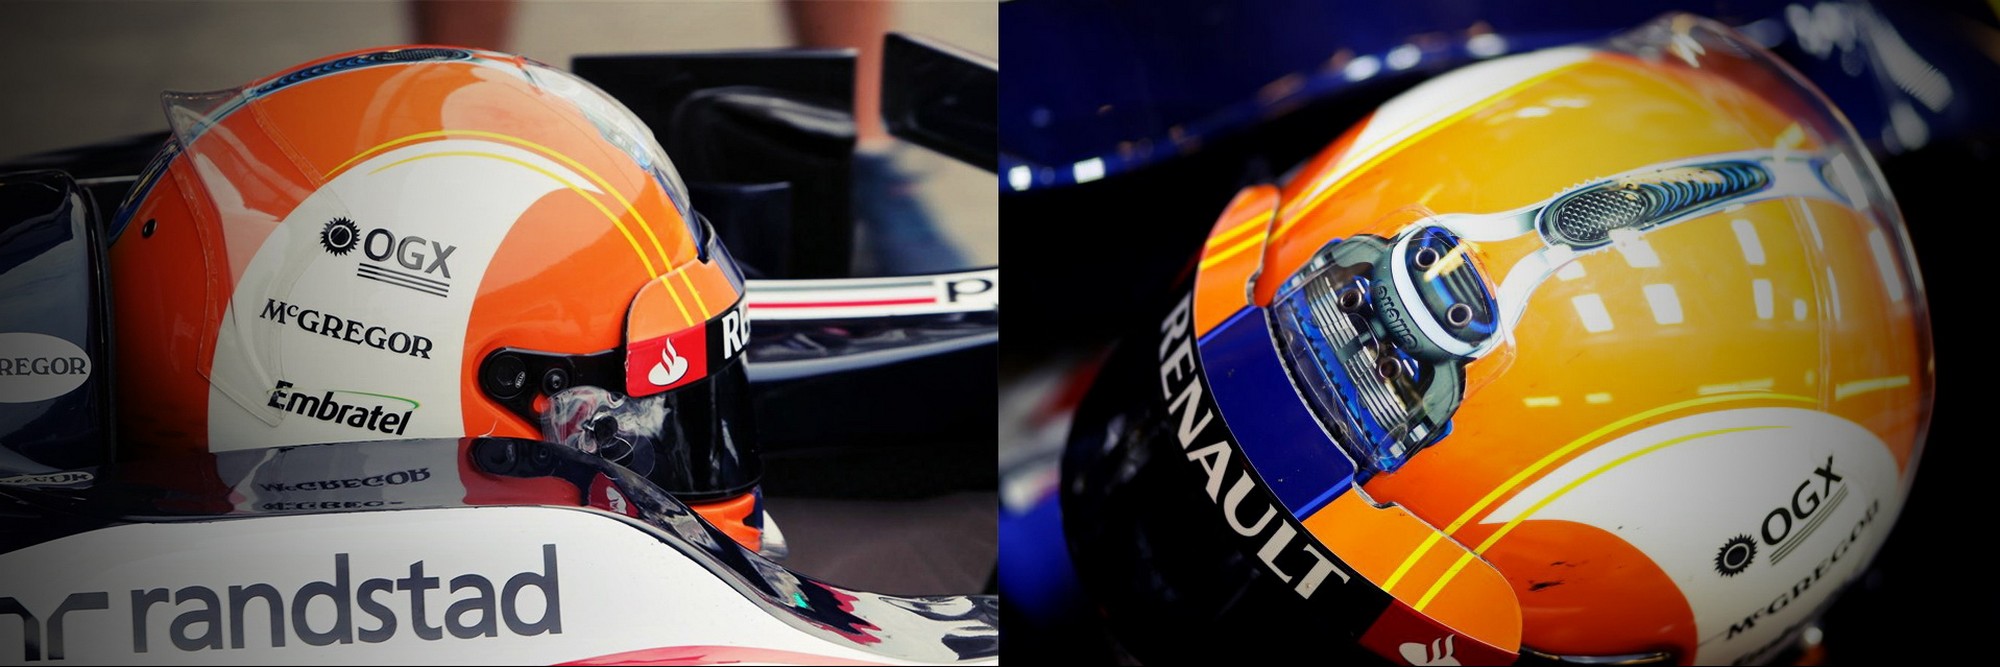 Шлем Бруно Сенны на Гран-При Бразилии 2012 года | 2012 Brazilian Grand Prix helmet of Bruno Senna